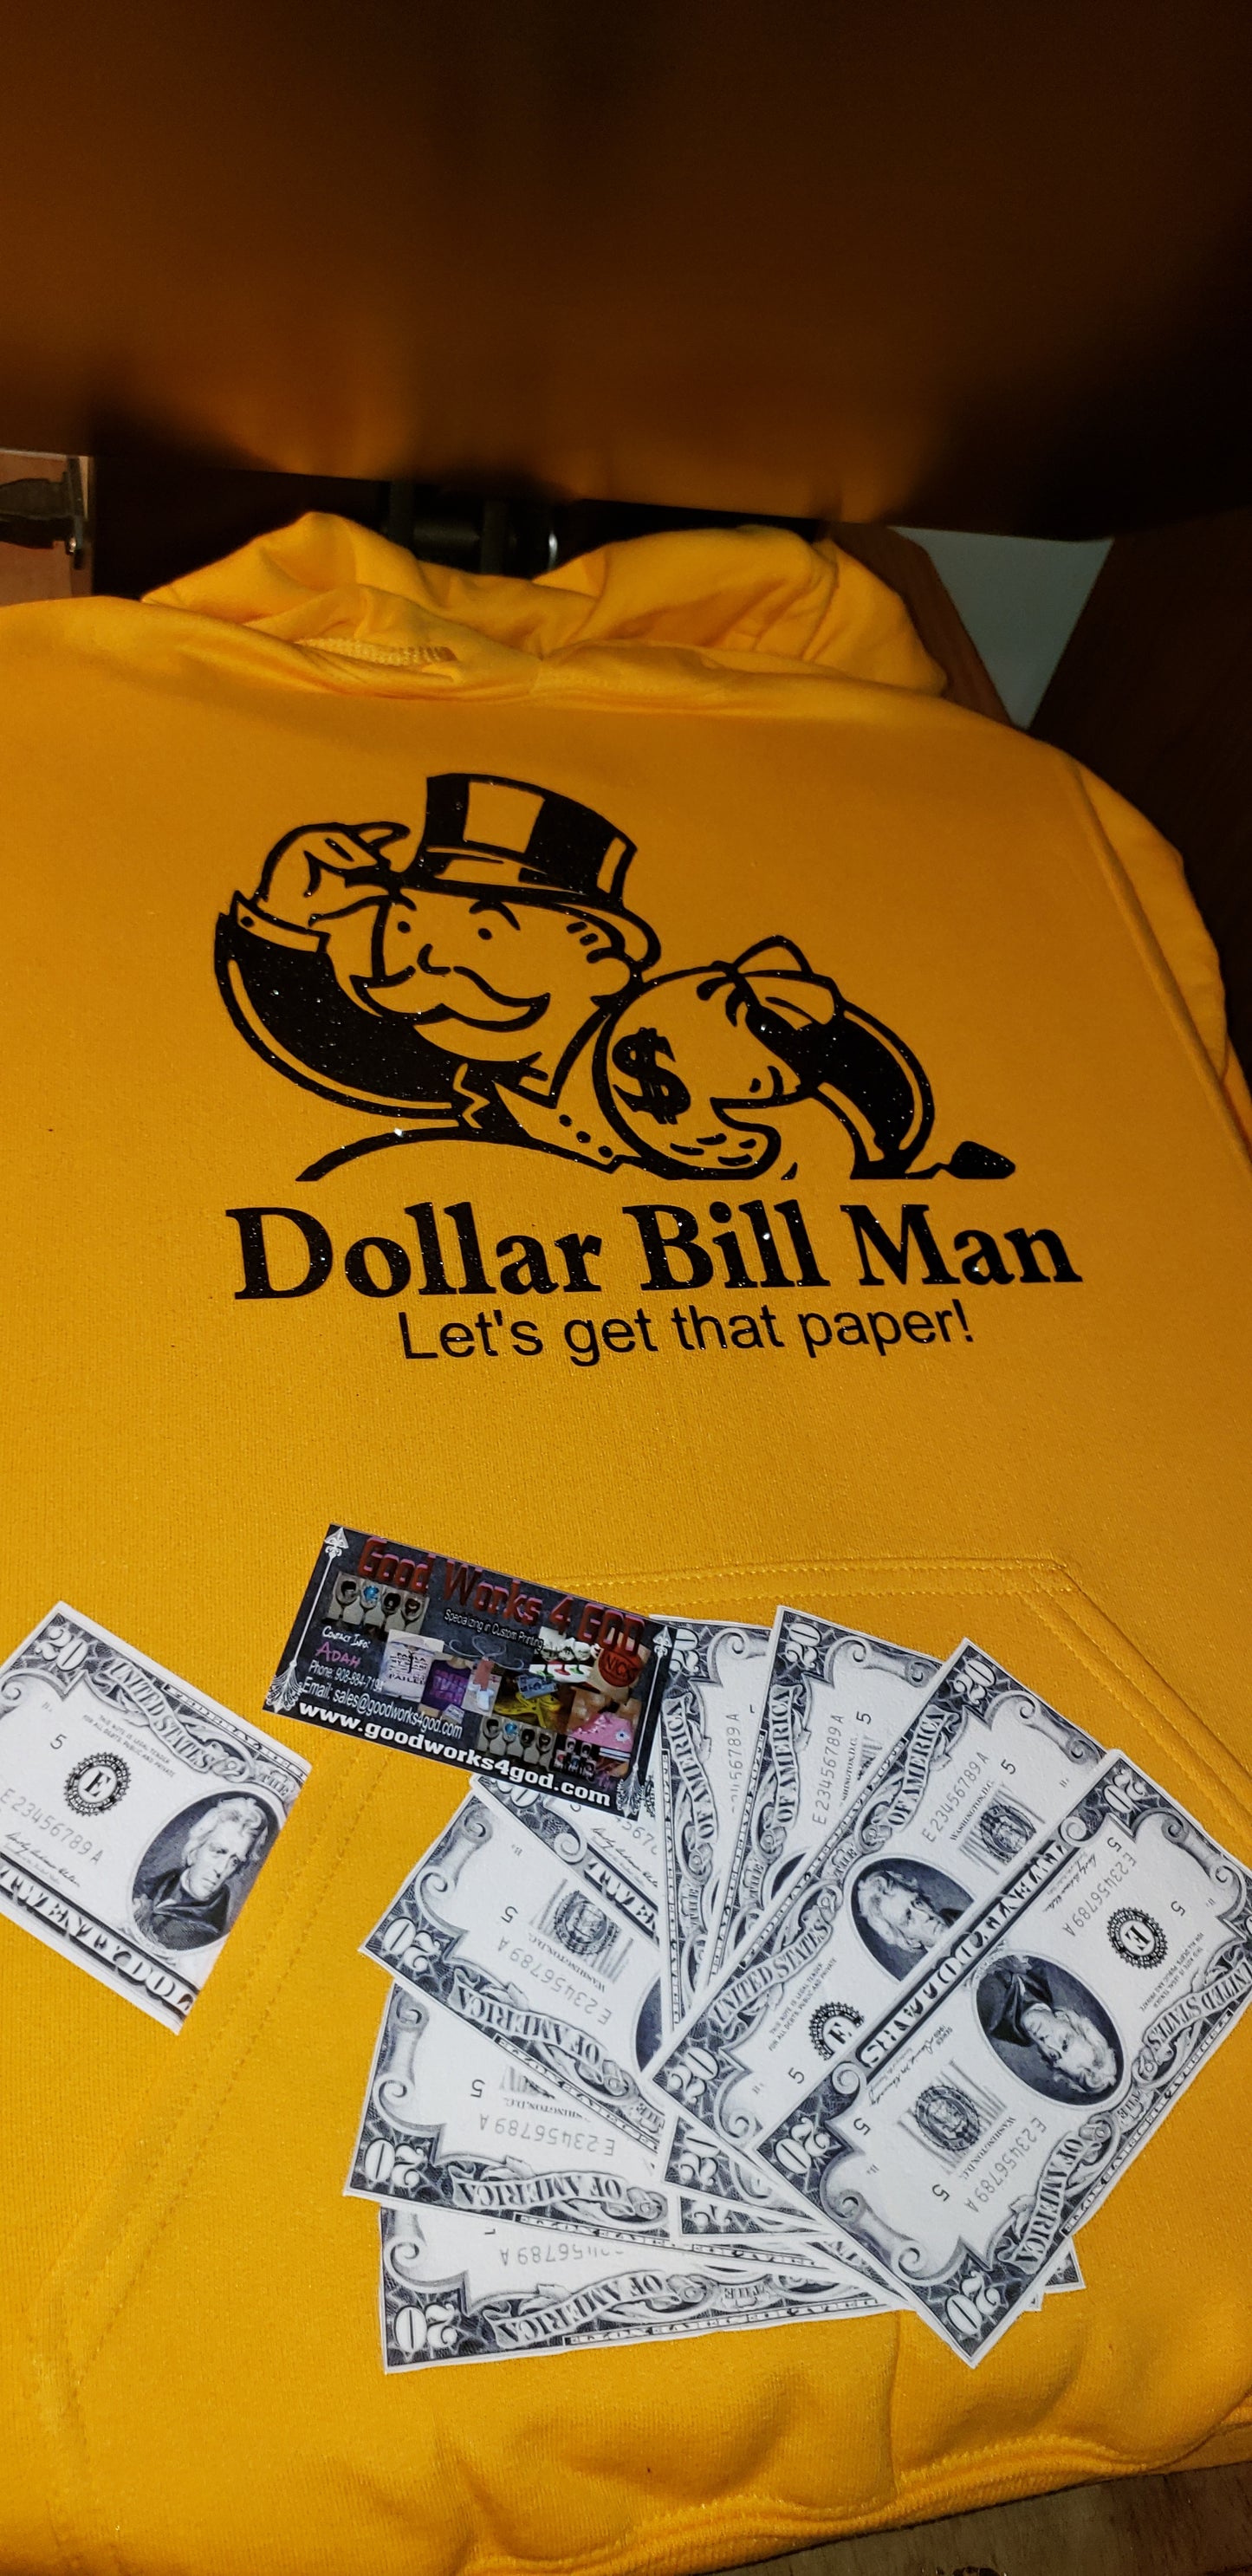 Dollar Bill Man